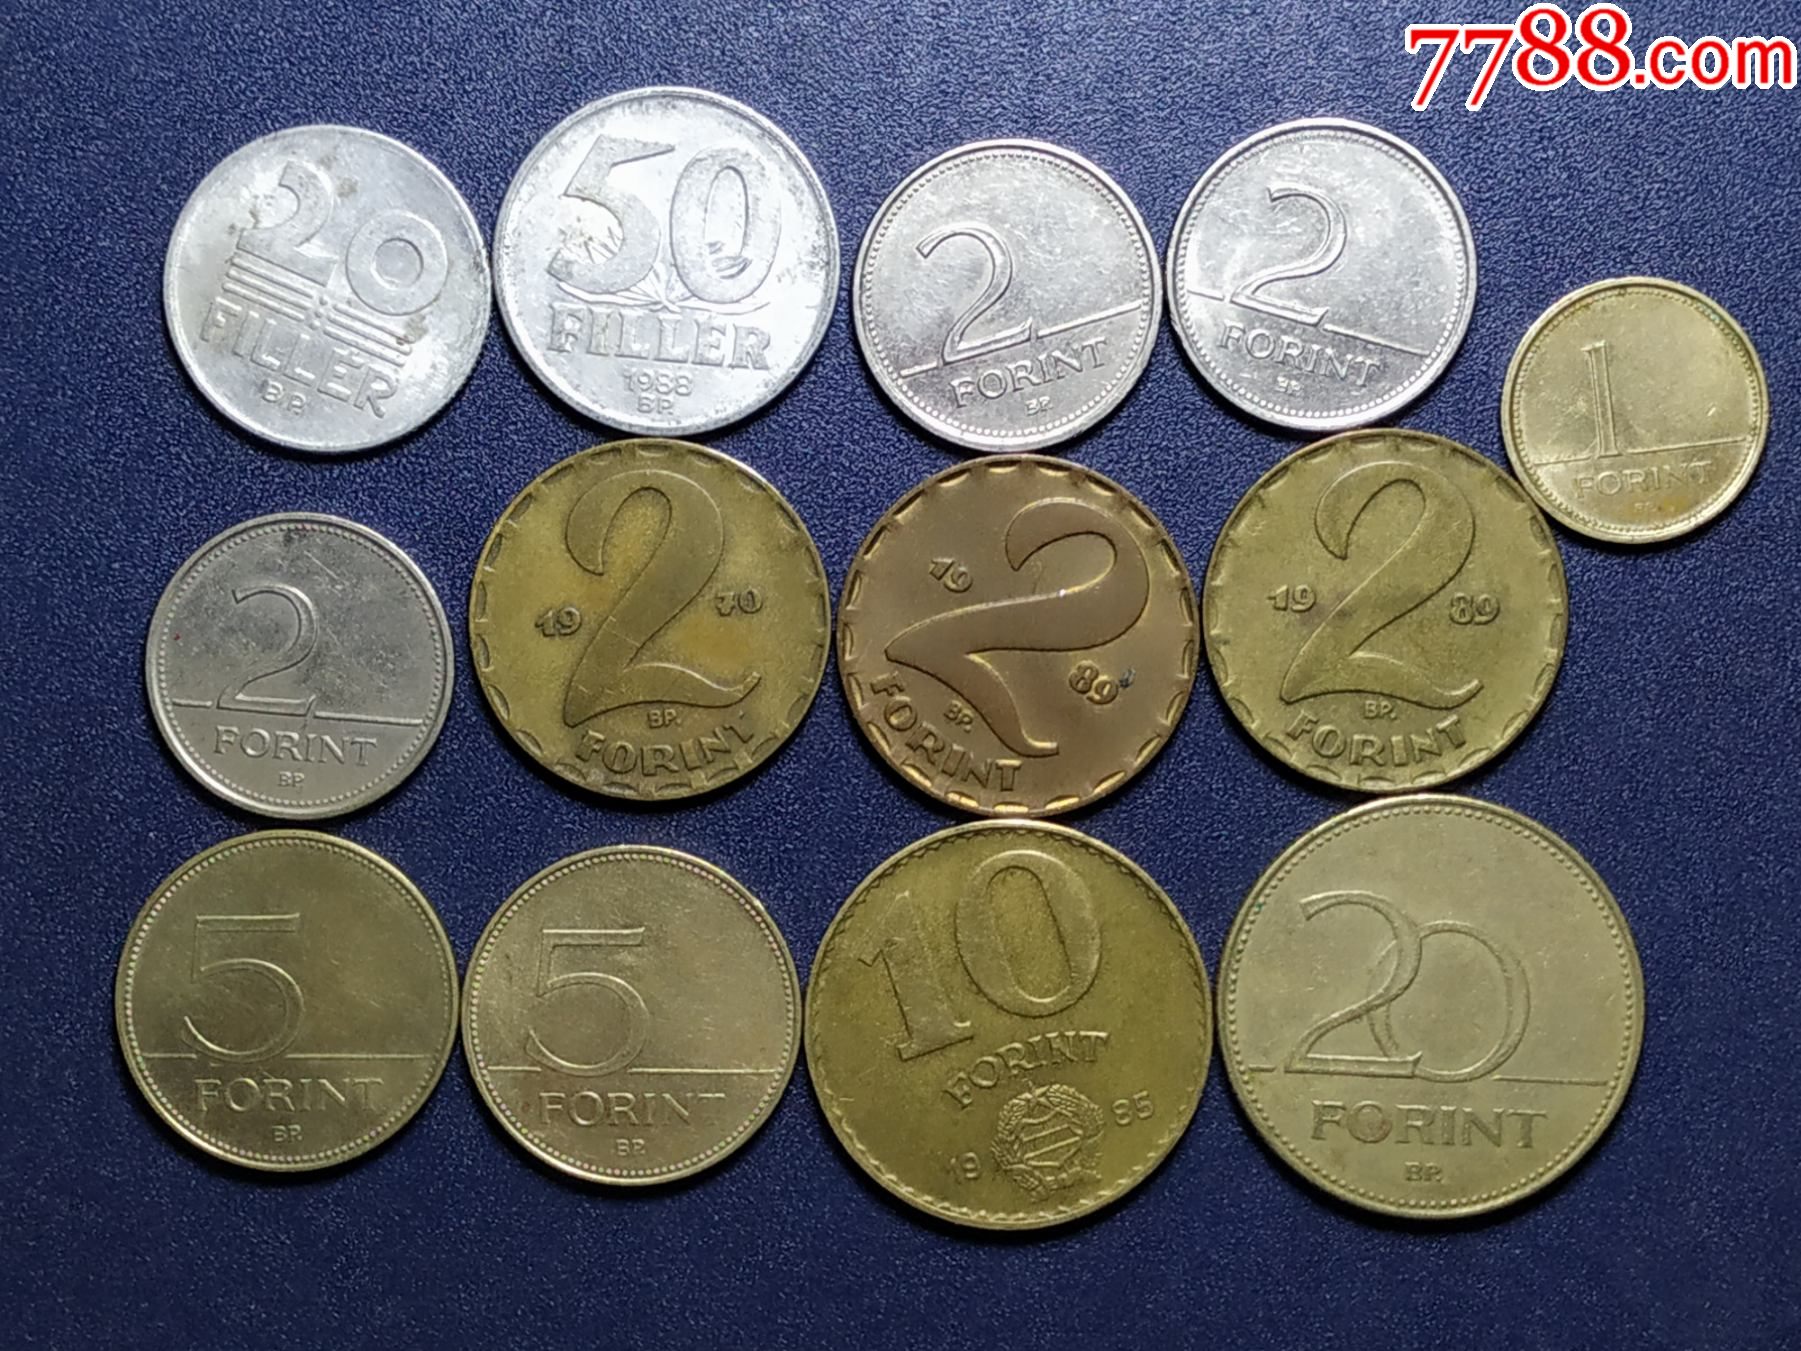 奥地利老版硬币一组￥5010品99好品巴西老版硬币一组￥2010品99好